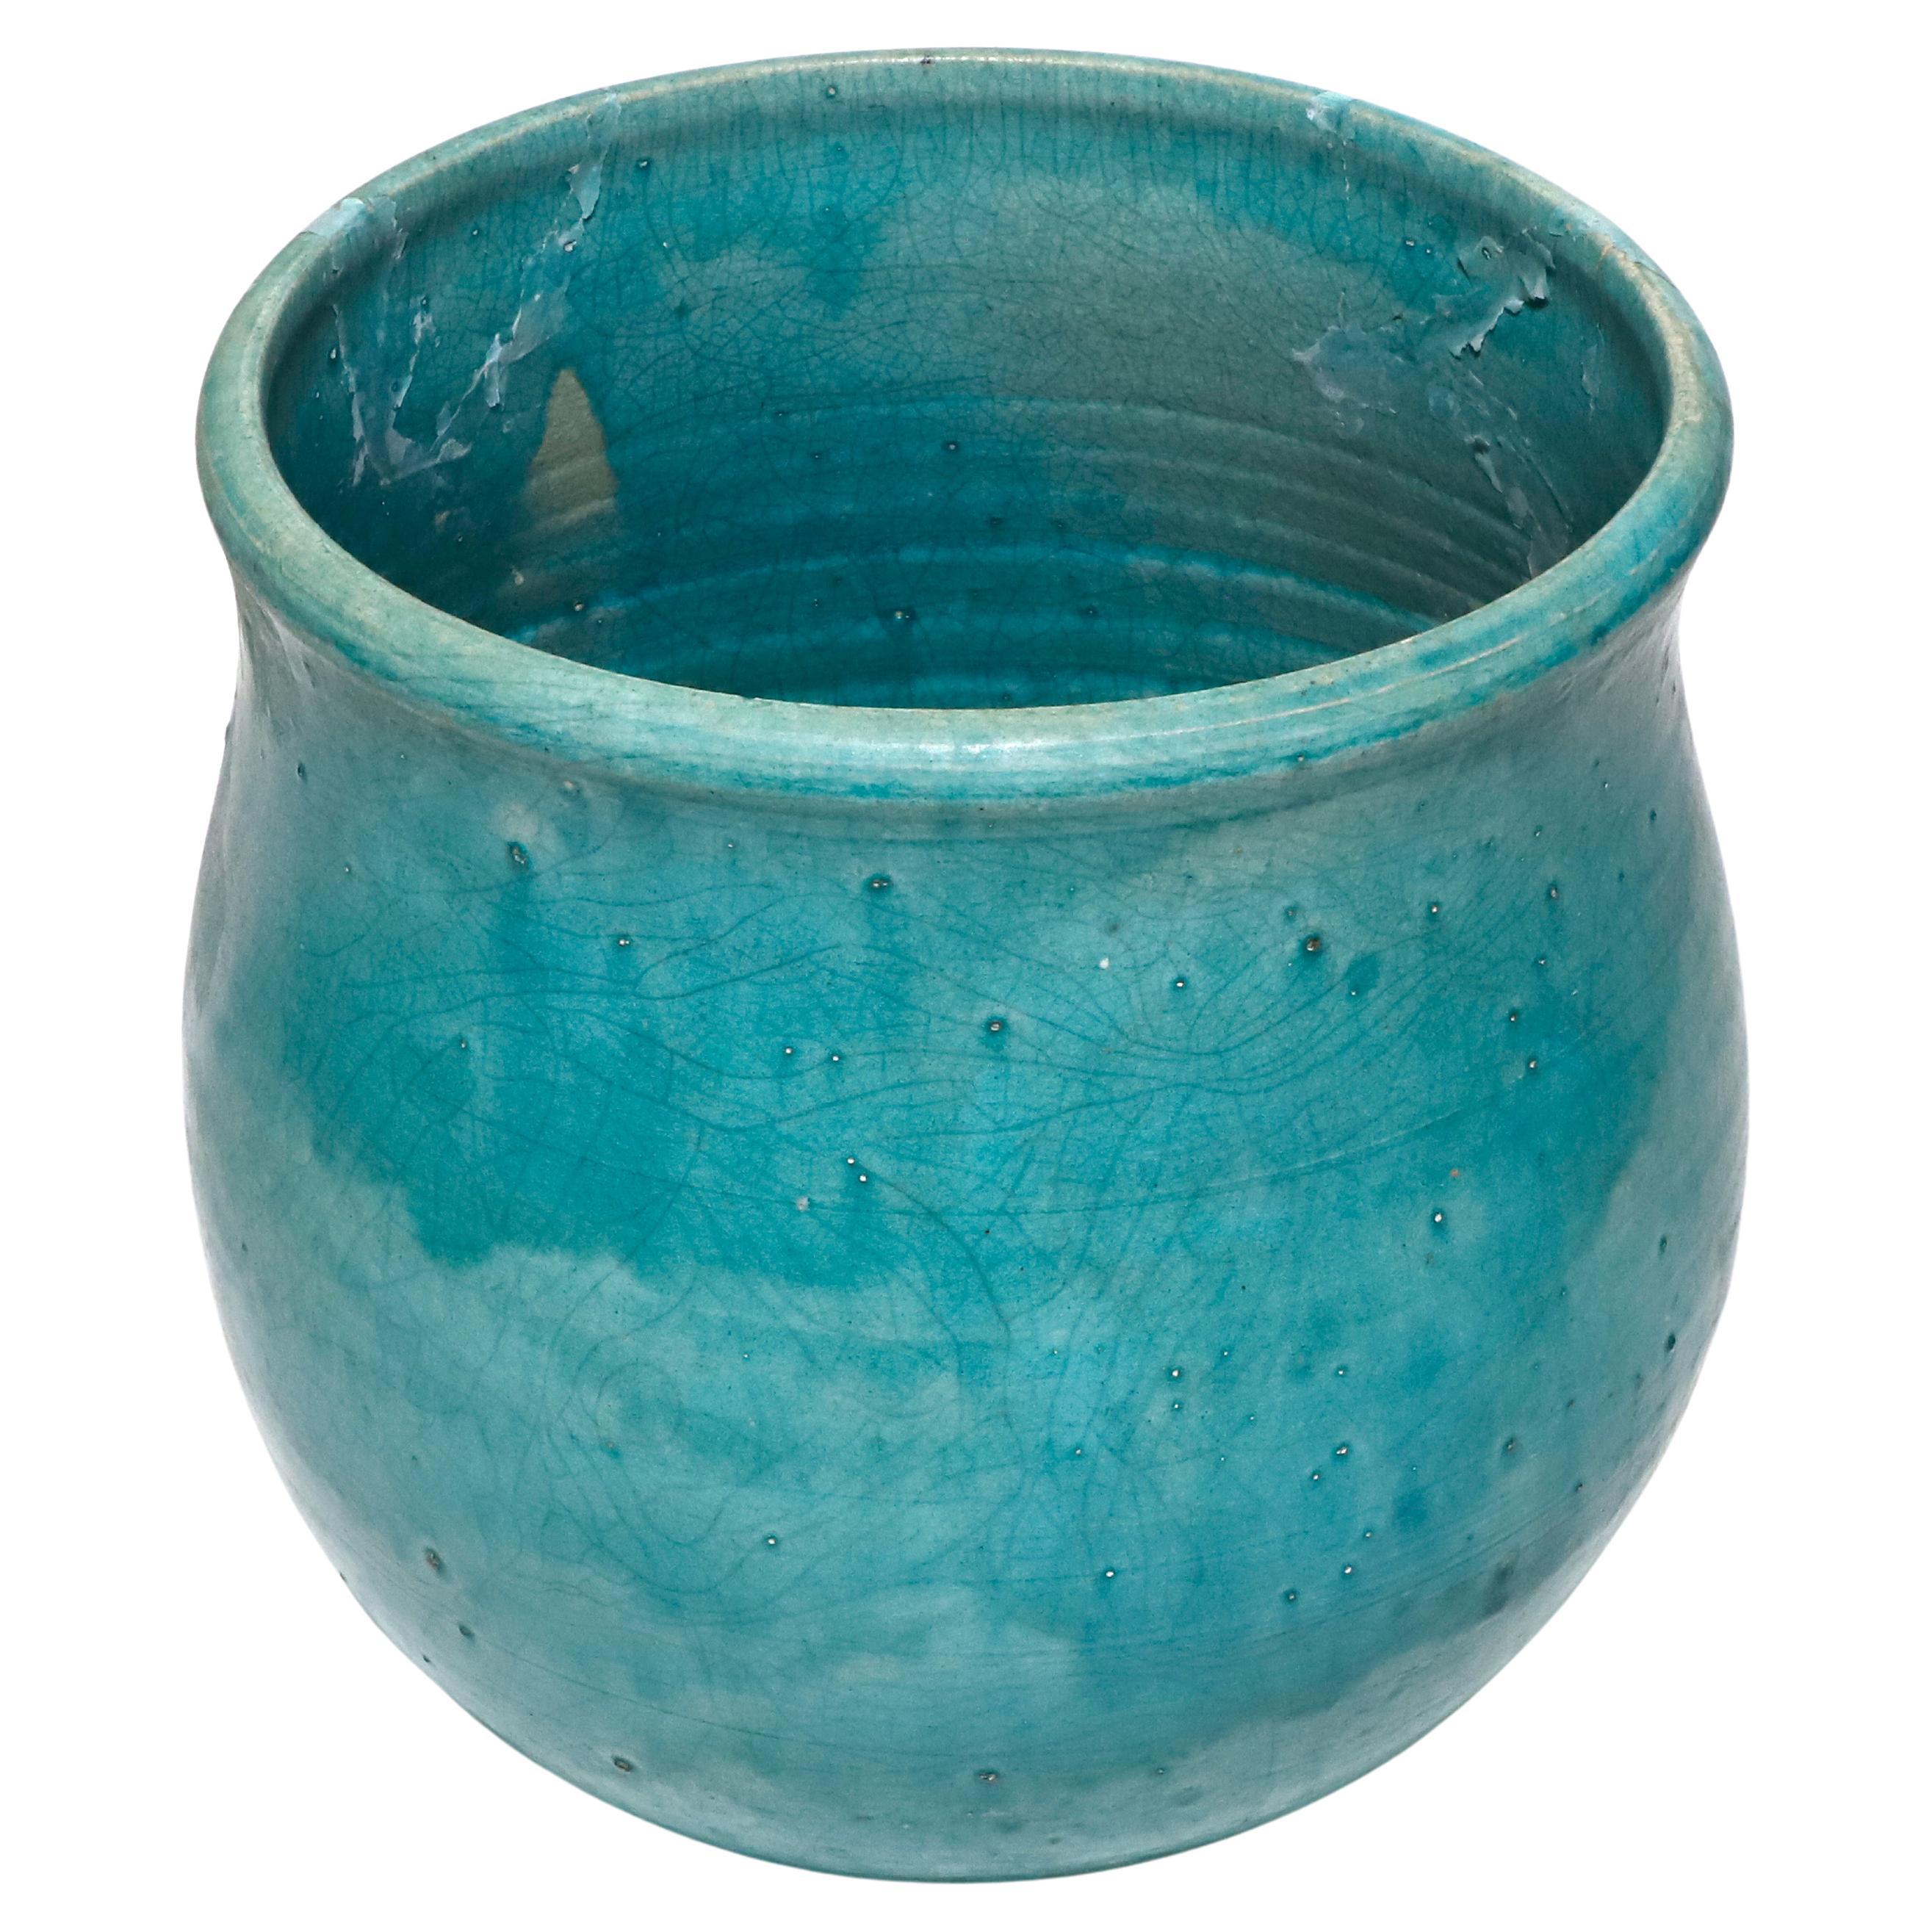 Geoffrey Borr Turquoise Glaze Pottery Vase Signed